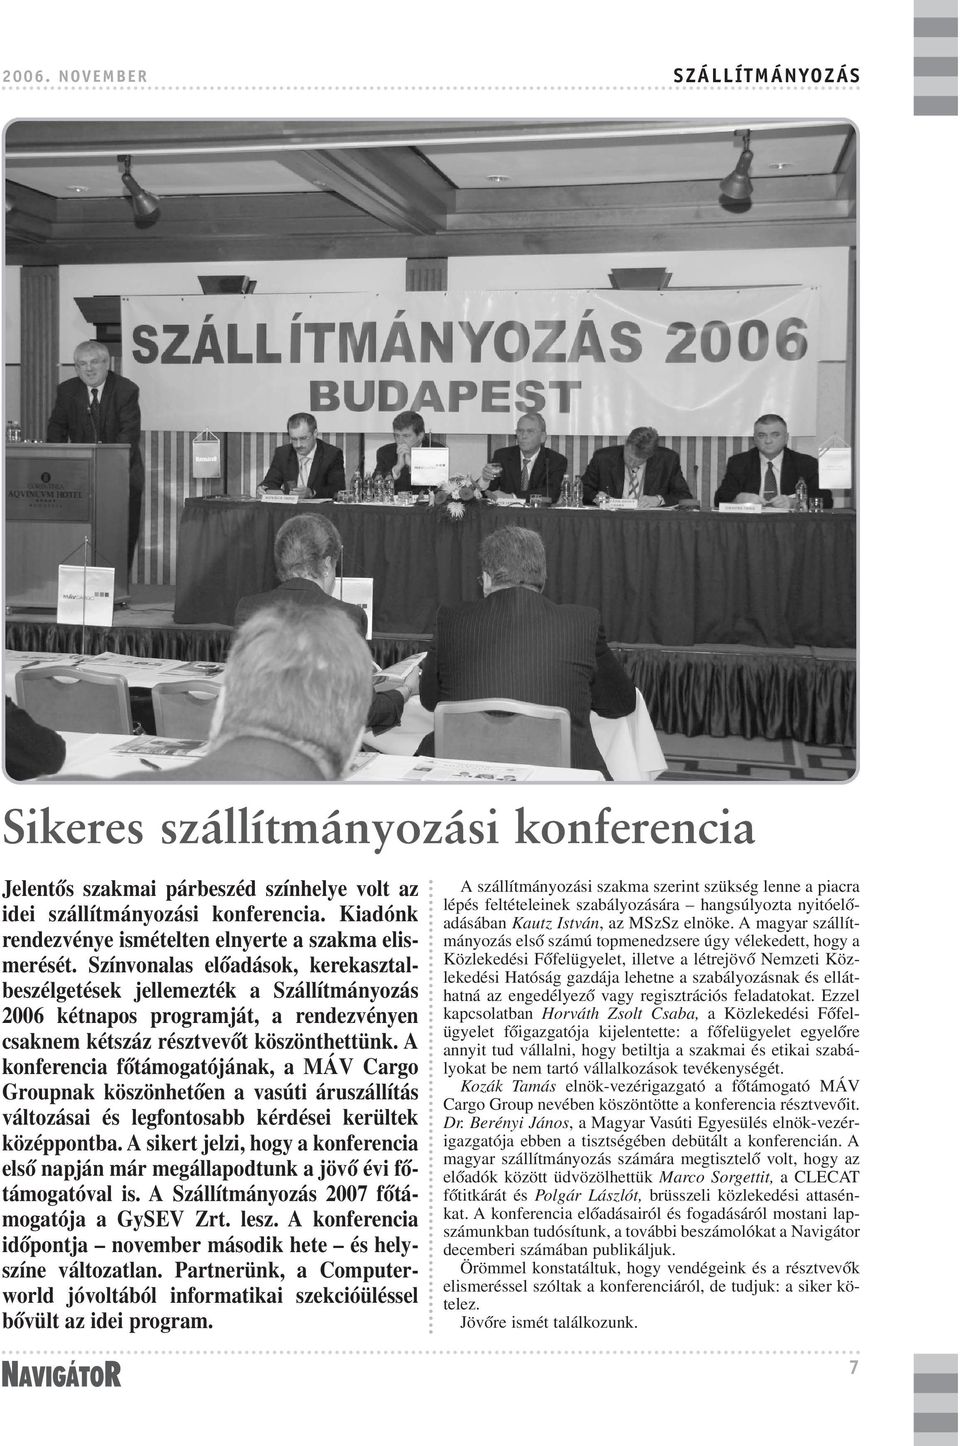 Színvonalas elõadások, kerekasztalbeszélgetések jellemezték a Szállítmányozás 2006 kétnapos programját, a rendezvényen csaknem kétszáz résztvevõt köszönthettünk.